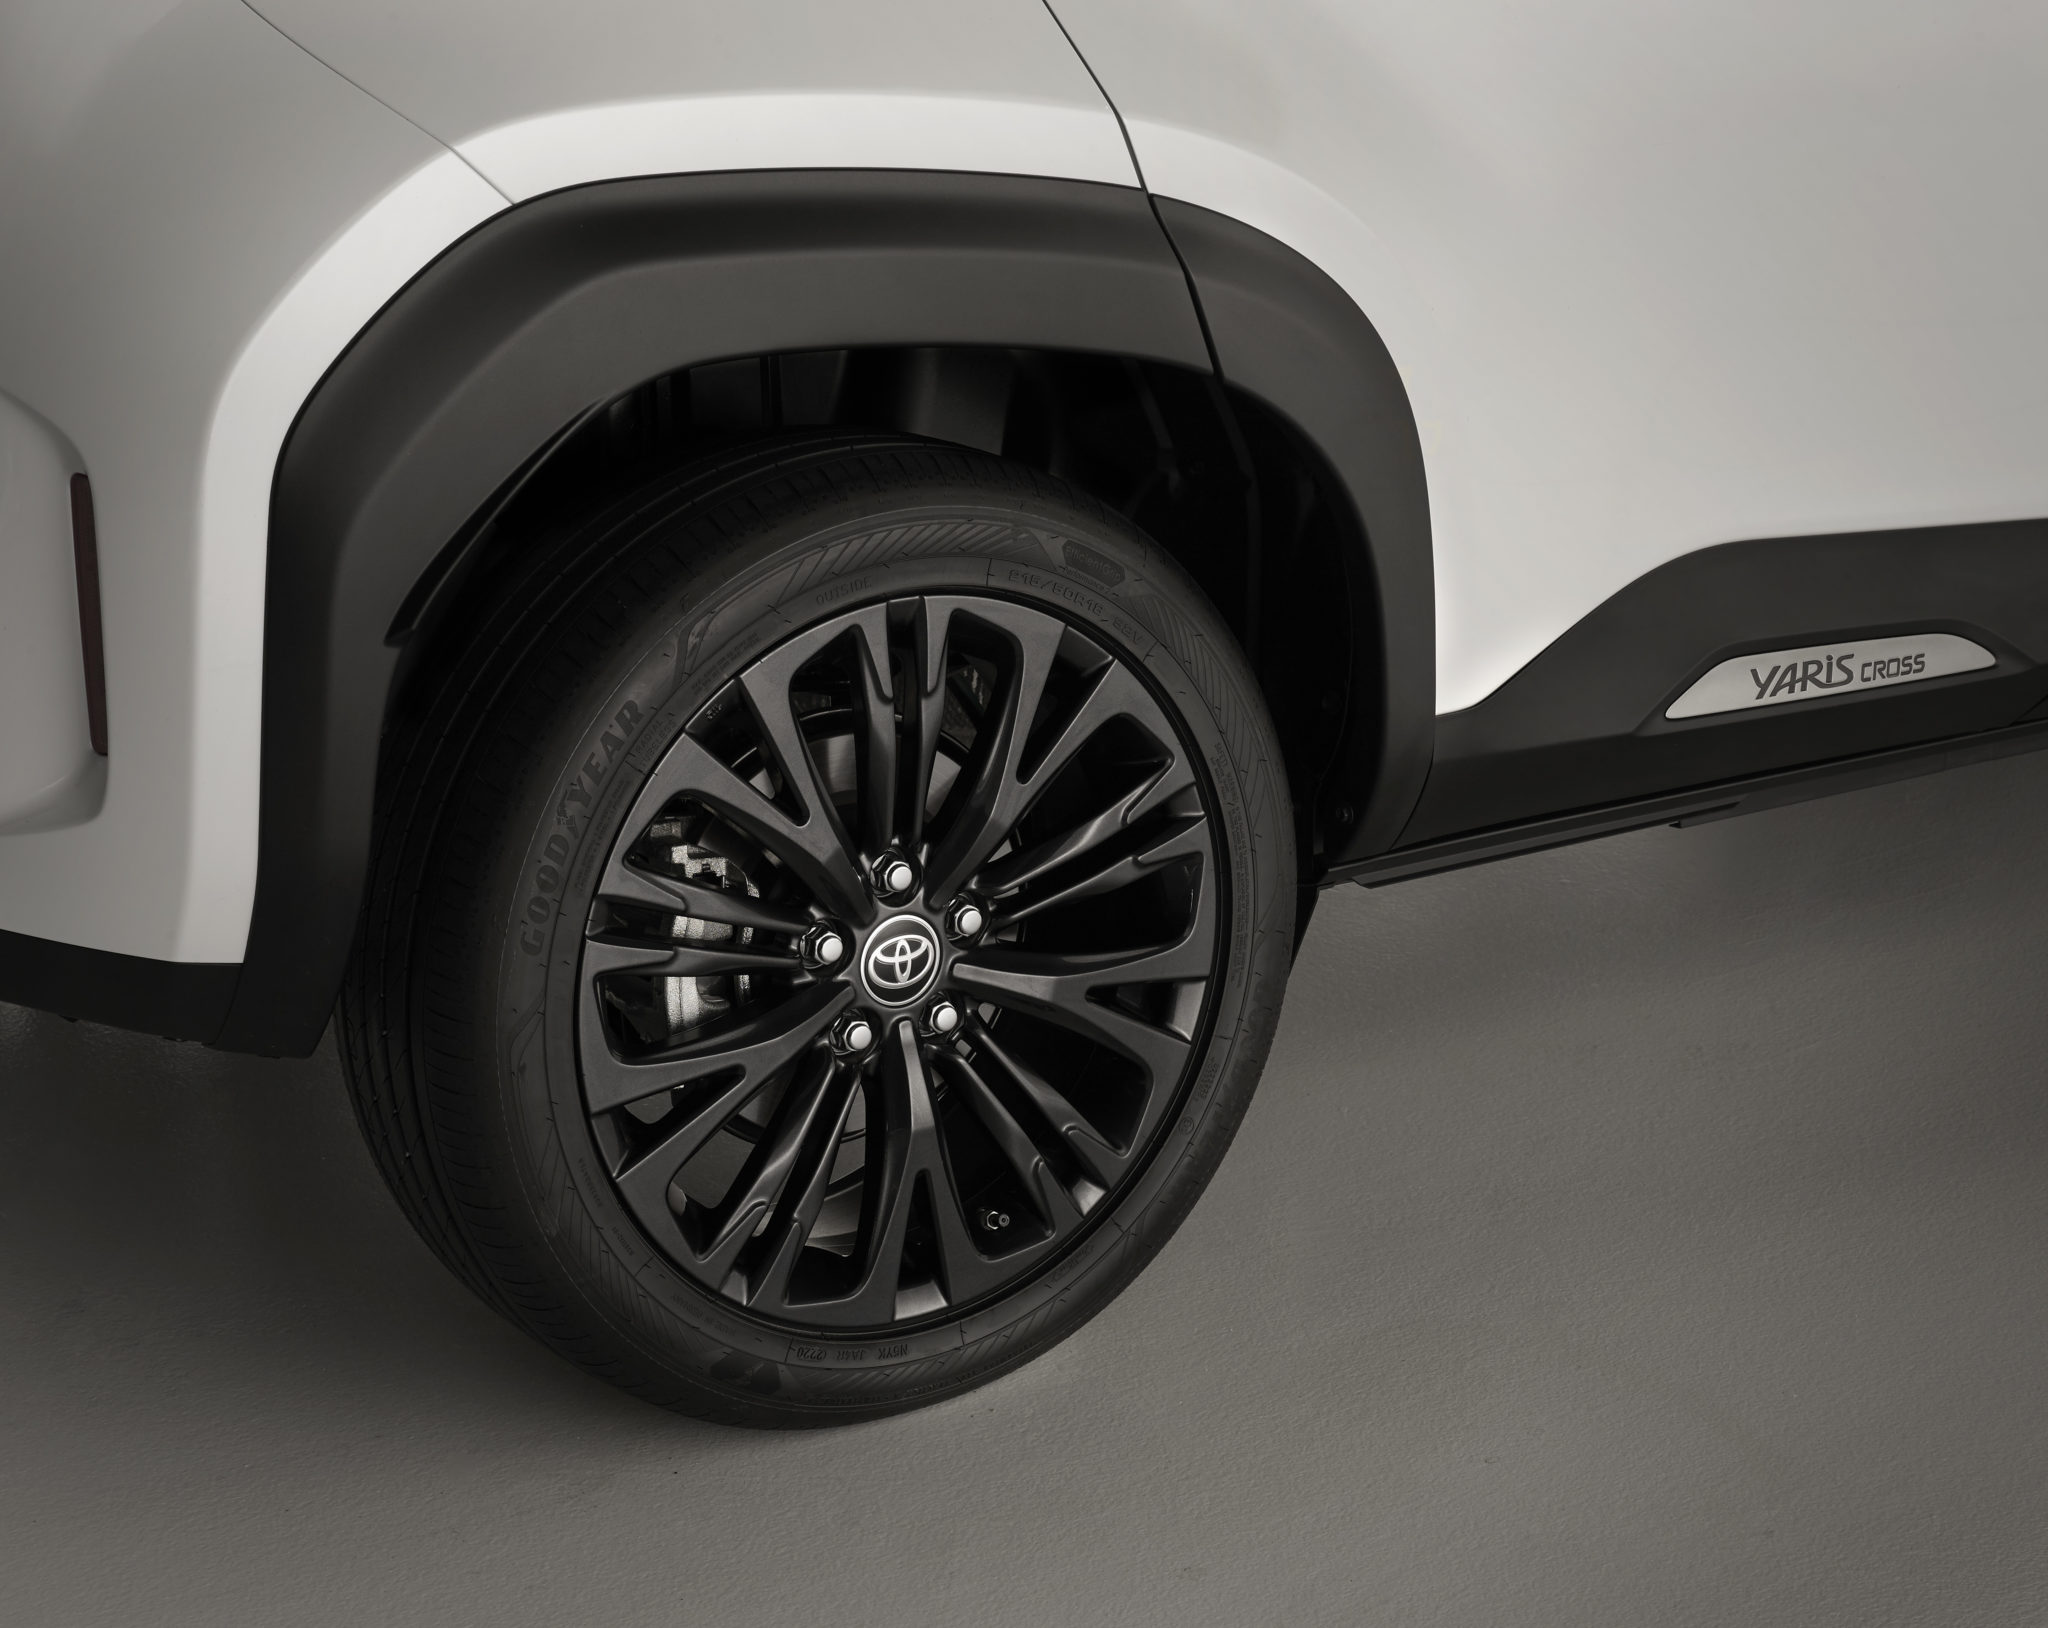 Toyota Yaris Cross bude z výroby vyjíždět na pneumatikách